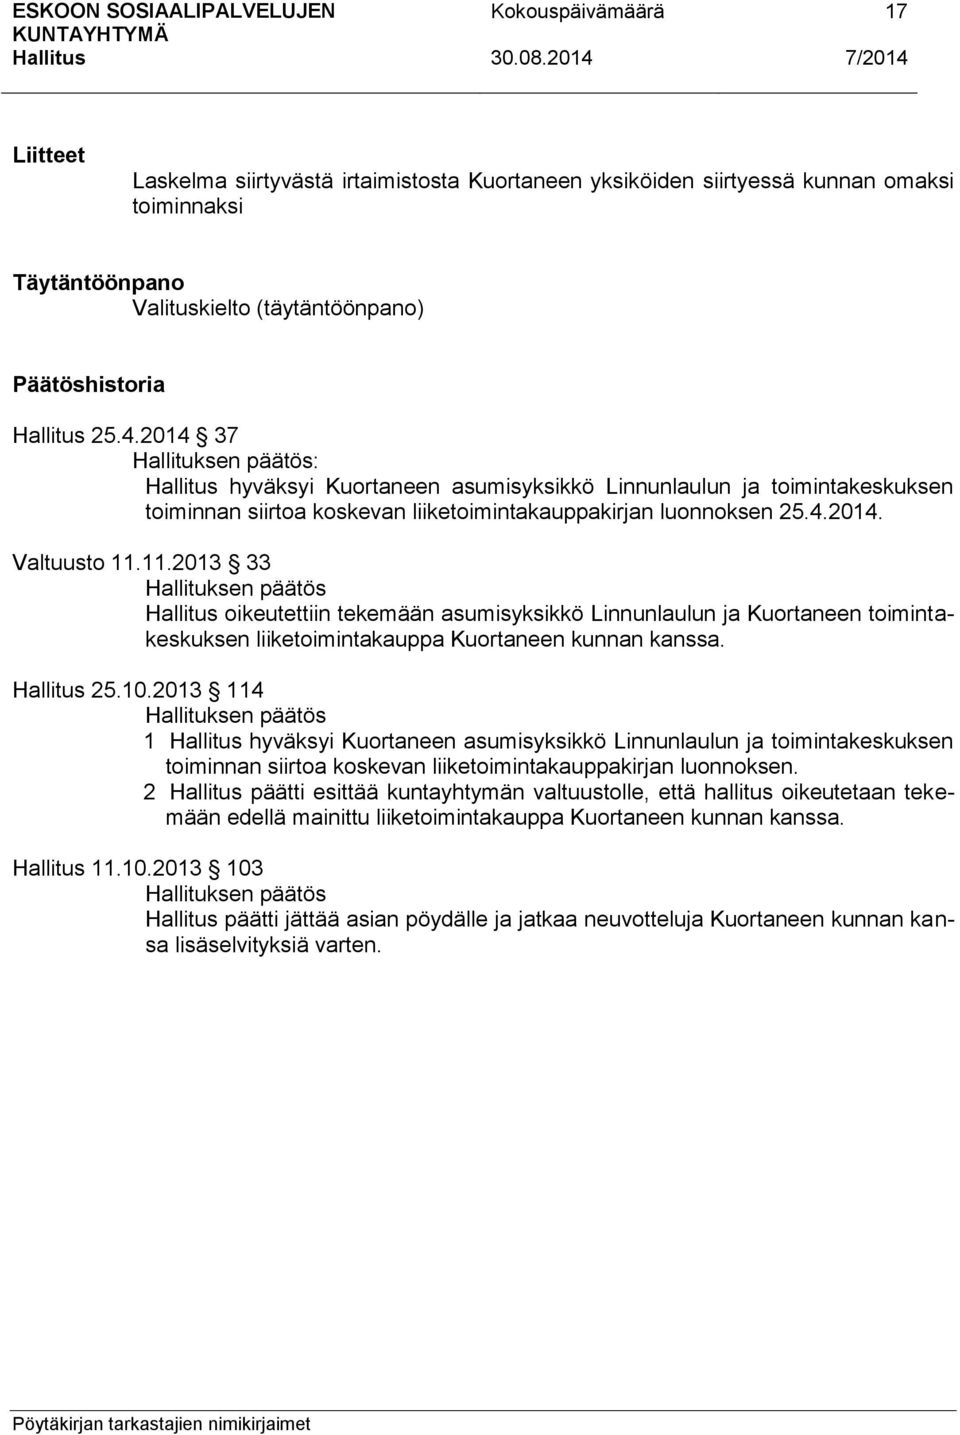 11.2013 33 oikeutettiin tekemään asumisyksikkö Linnunlaulun ja Kuortaneen toimintakeskuksen liiketoimintakauppa Kuortaneen kunnan kanssa. 25.10.